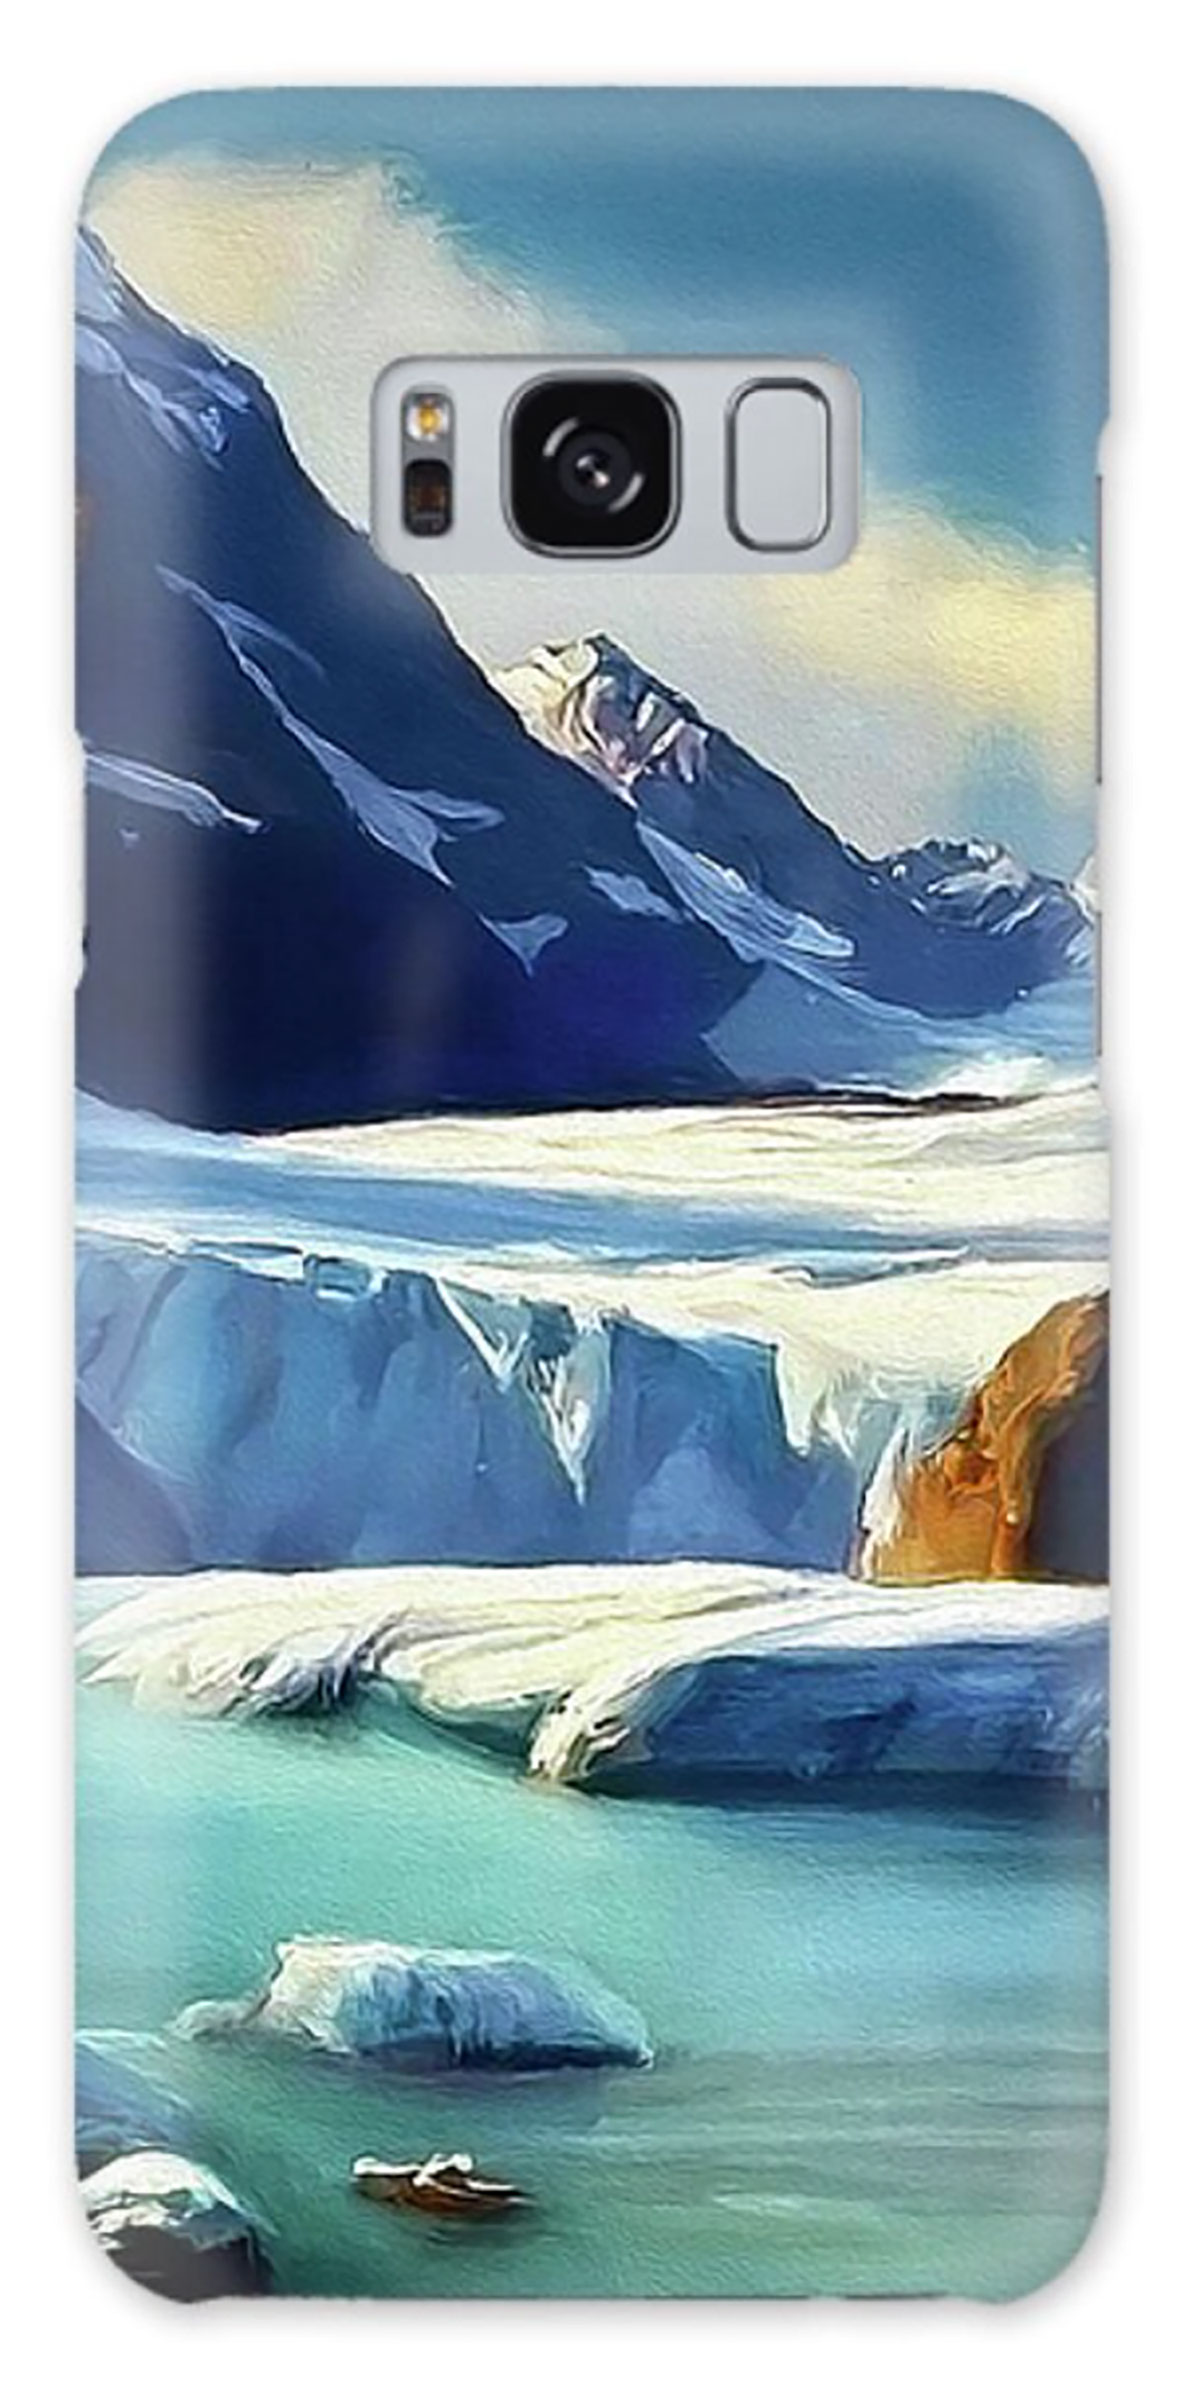 Aotearoa Glaciers 2 rendition image